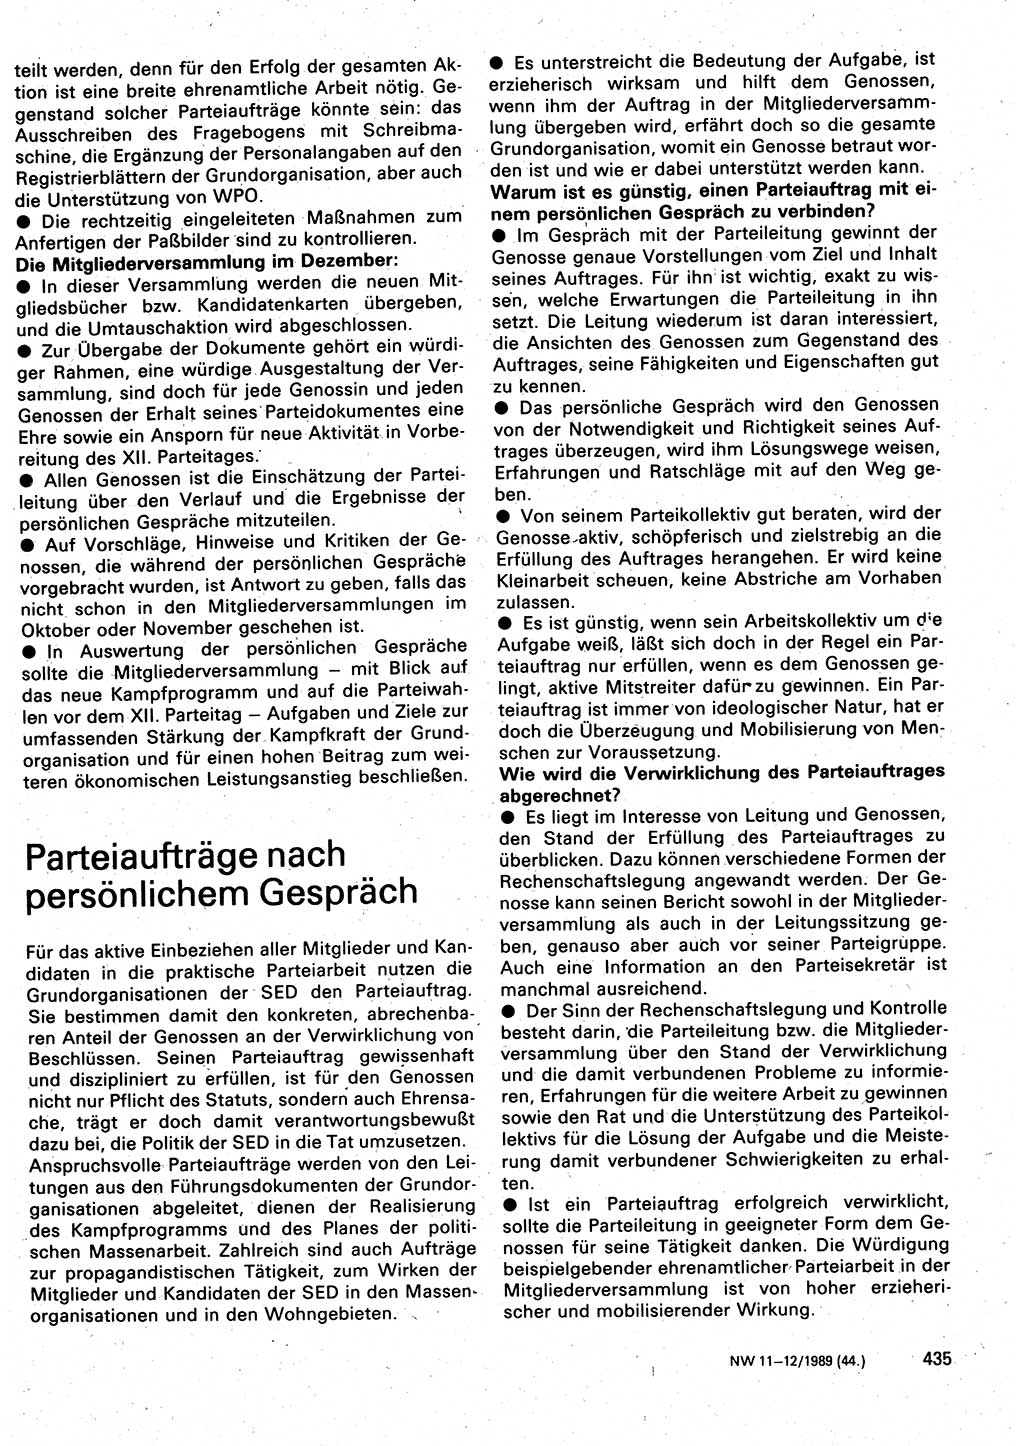 Neuer Weg (NW), Organ des Zentralkomitees (ZK) der SED (Sozialistische Einheitspartei Deutschlands) für Fragen des Parteilebens, 44. Jahrgang [Deutsche Demokratische Republik (DDR)] 1989, Seite 435 (NW ZK SED DDR 1989, S. 435)